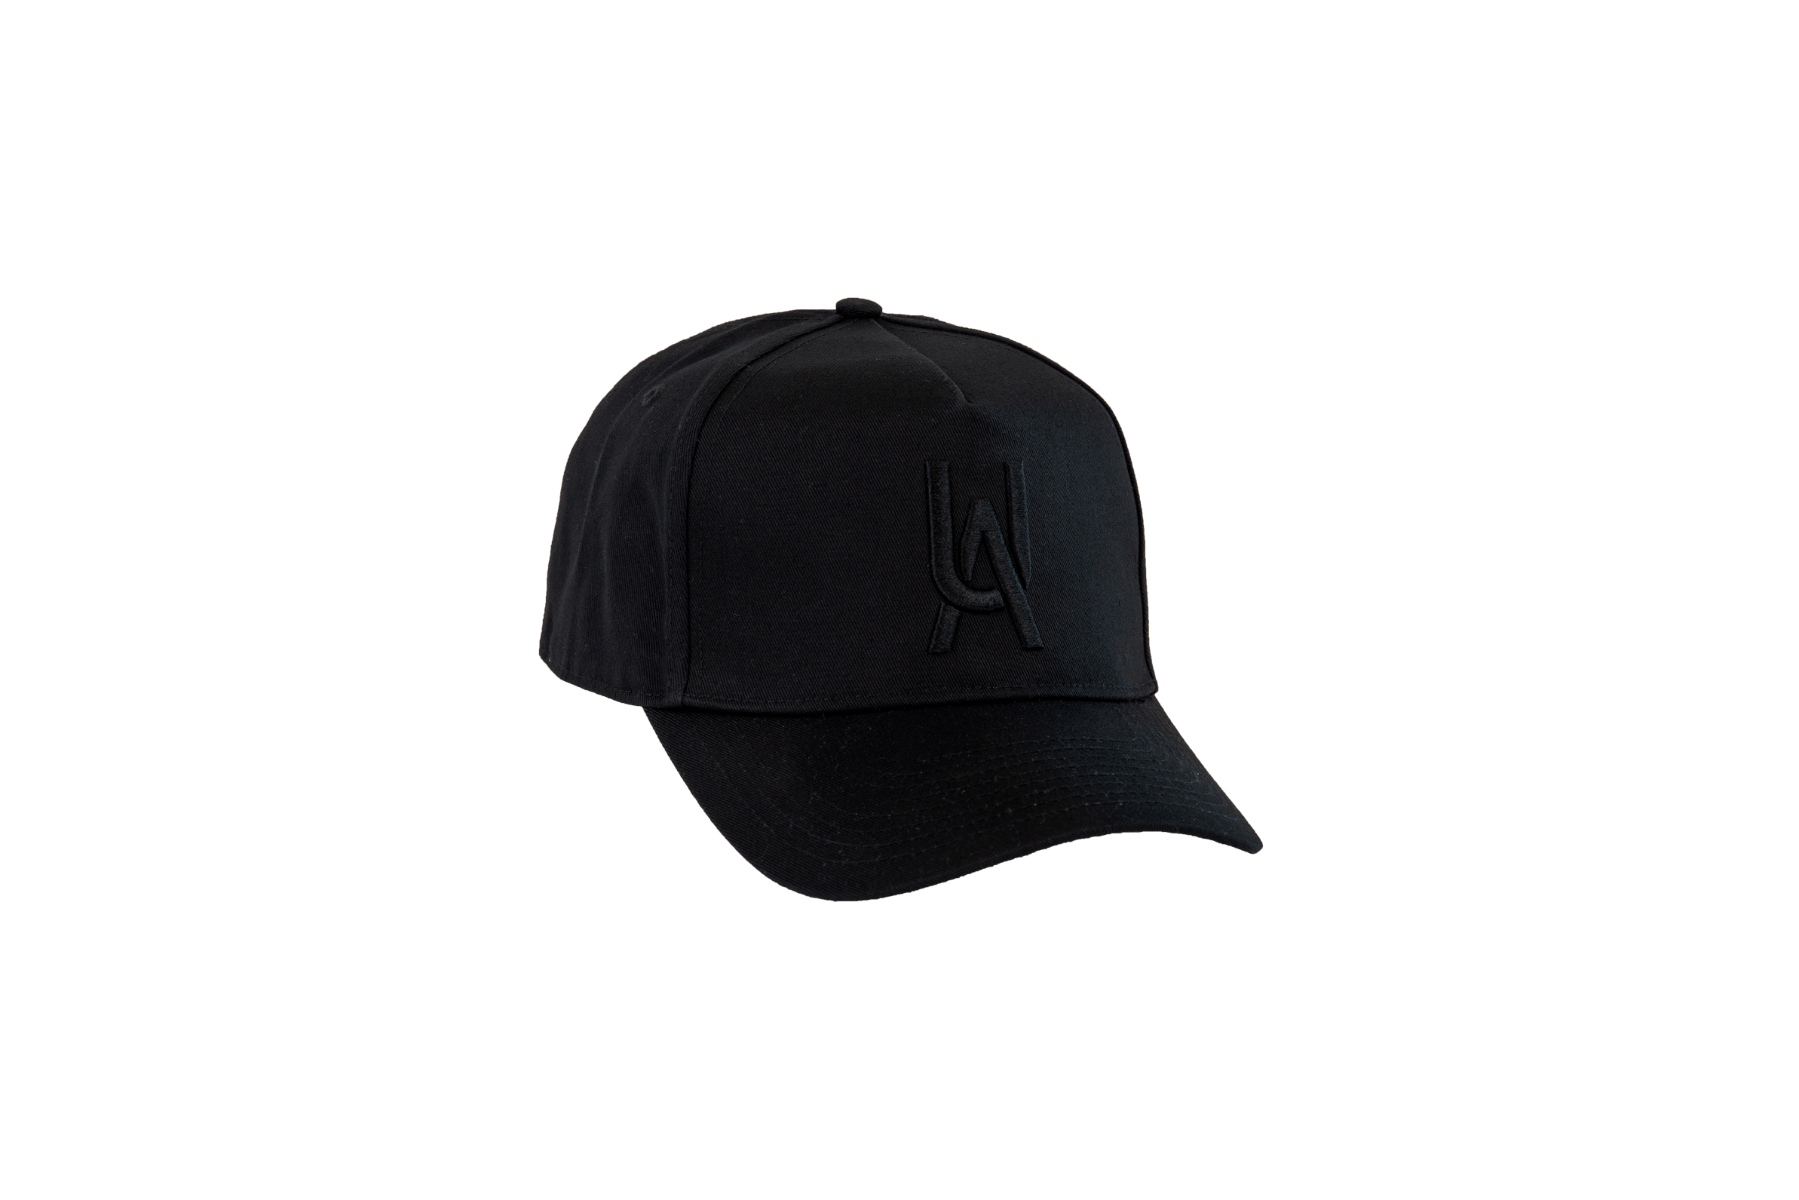 https://www.onlycraftbeer.com.au/media/catalog/product/u/r/urban-alley-merchandise-hat-stitched-ua-black-snapback-01.png